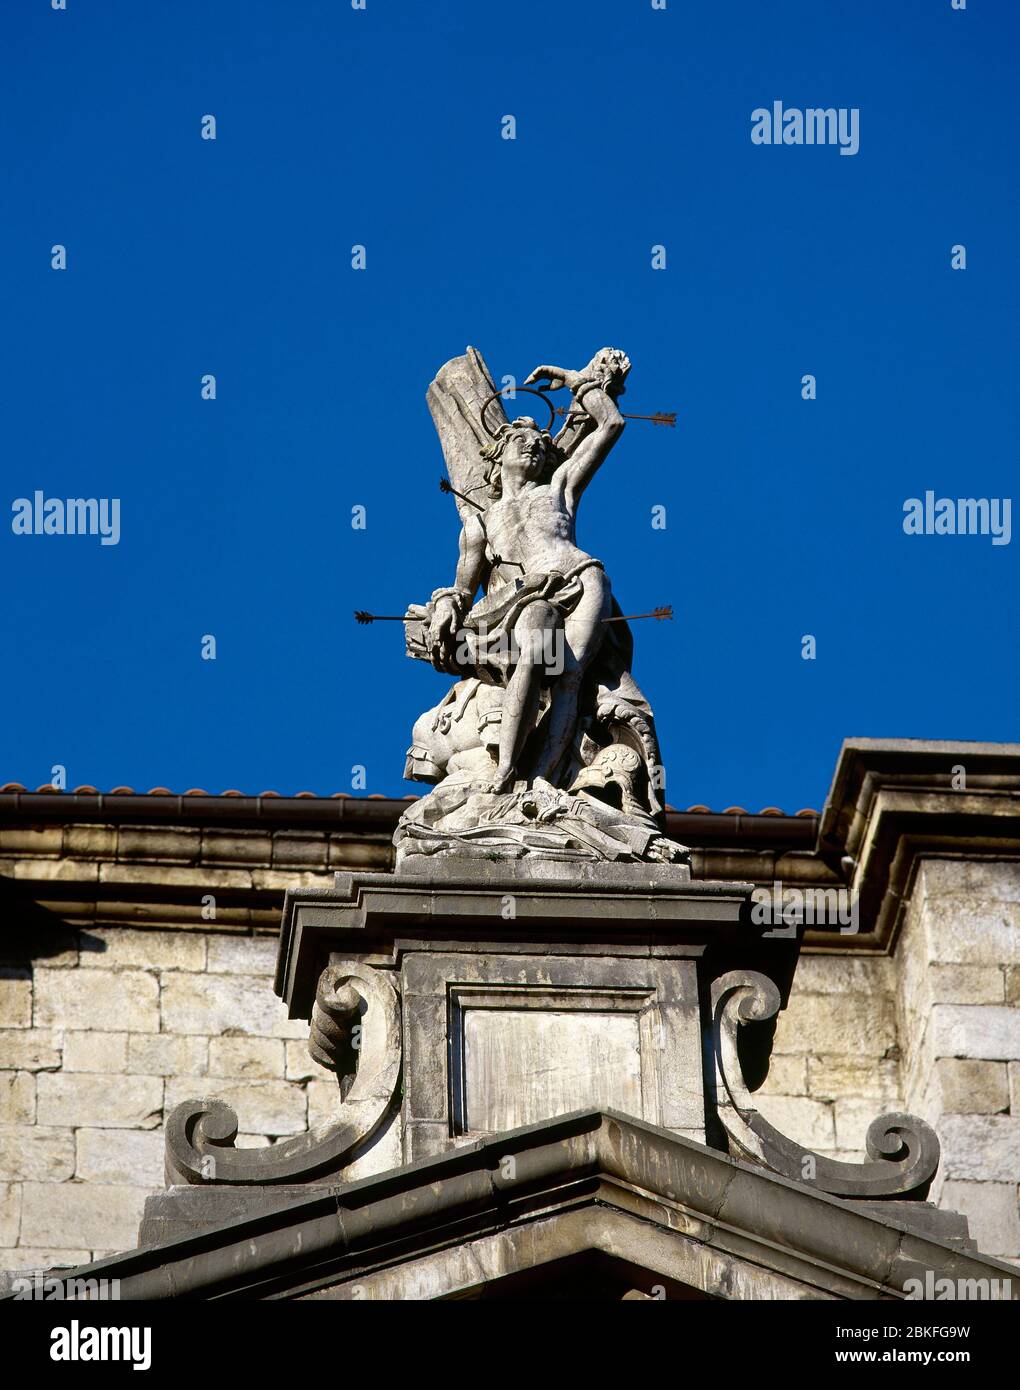 St. Sebastian (c. 256-288 N. CHR.). Frühchristlicher heiliger und Märtyrer. Statue, die die neoklassische Fassade der Pfarrkirche San Sebastian de Soreasu krönt, die im 18. Jahrhundert von Ventura Rodriguez erbaut wurde. Azpeitia, Baskenland, Spanien. Stockfoto